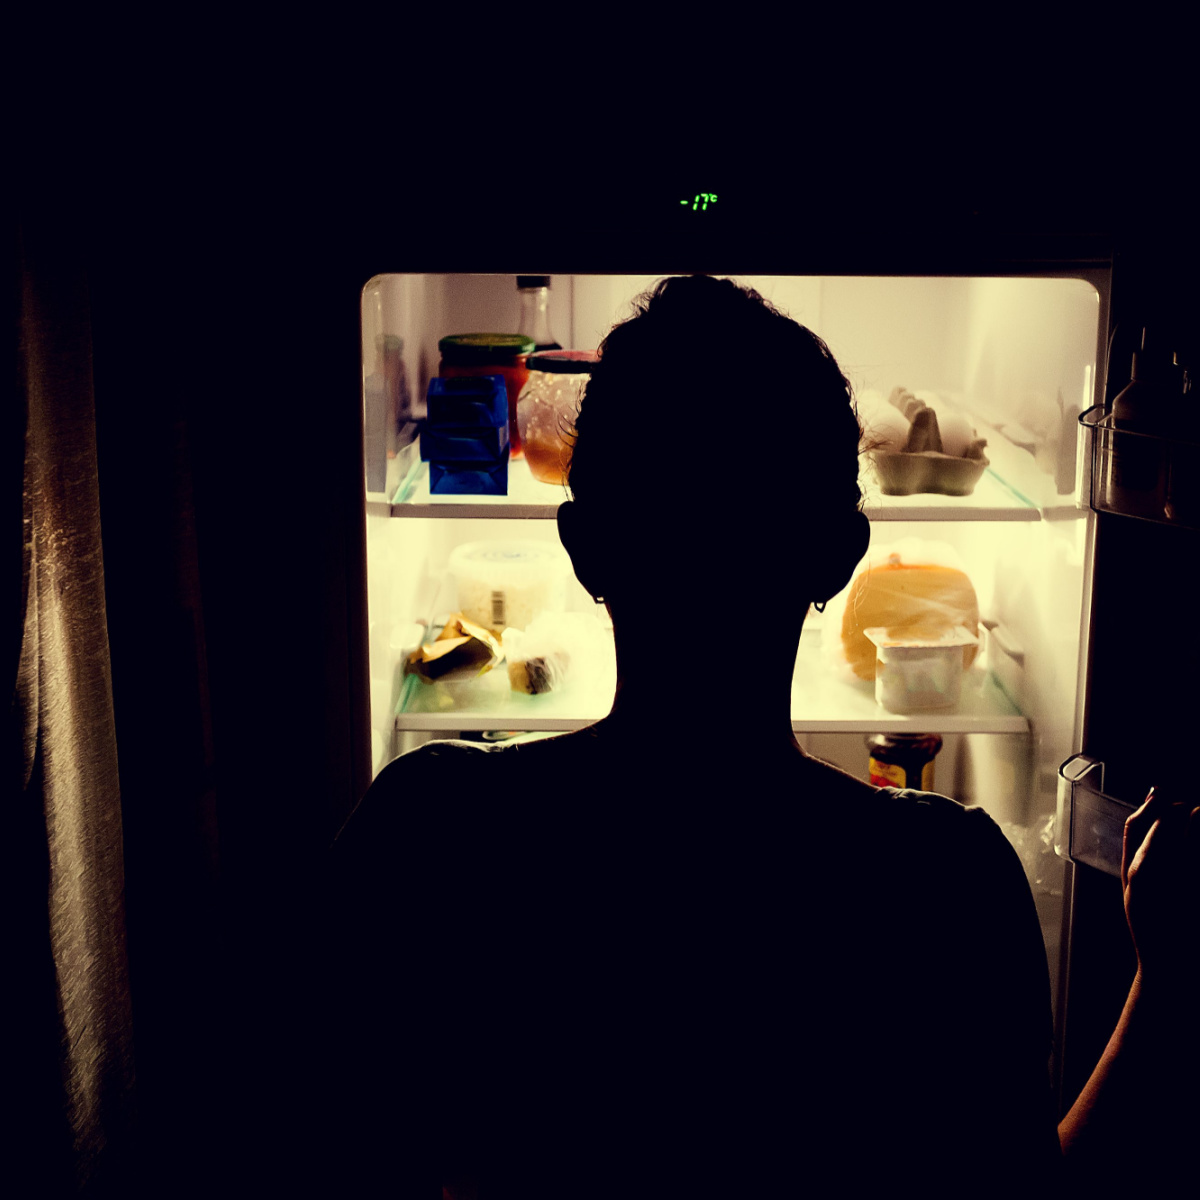 woman looking inside fridge